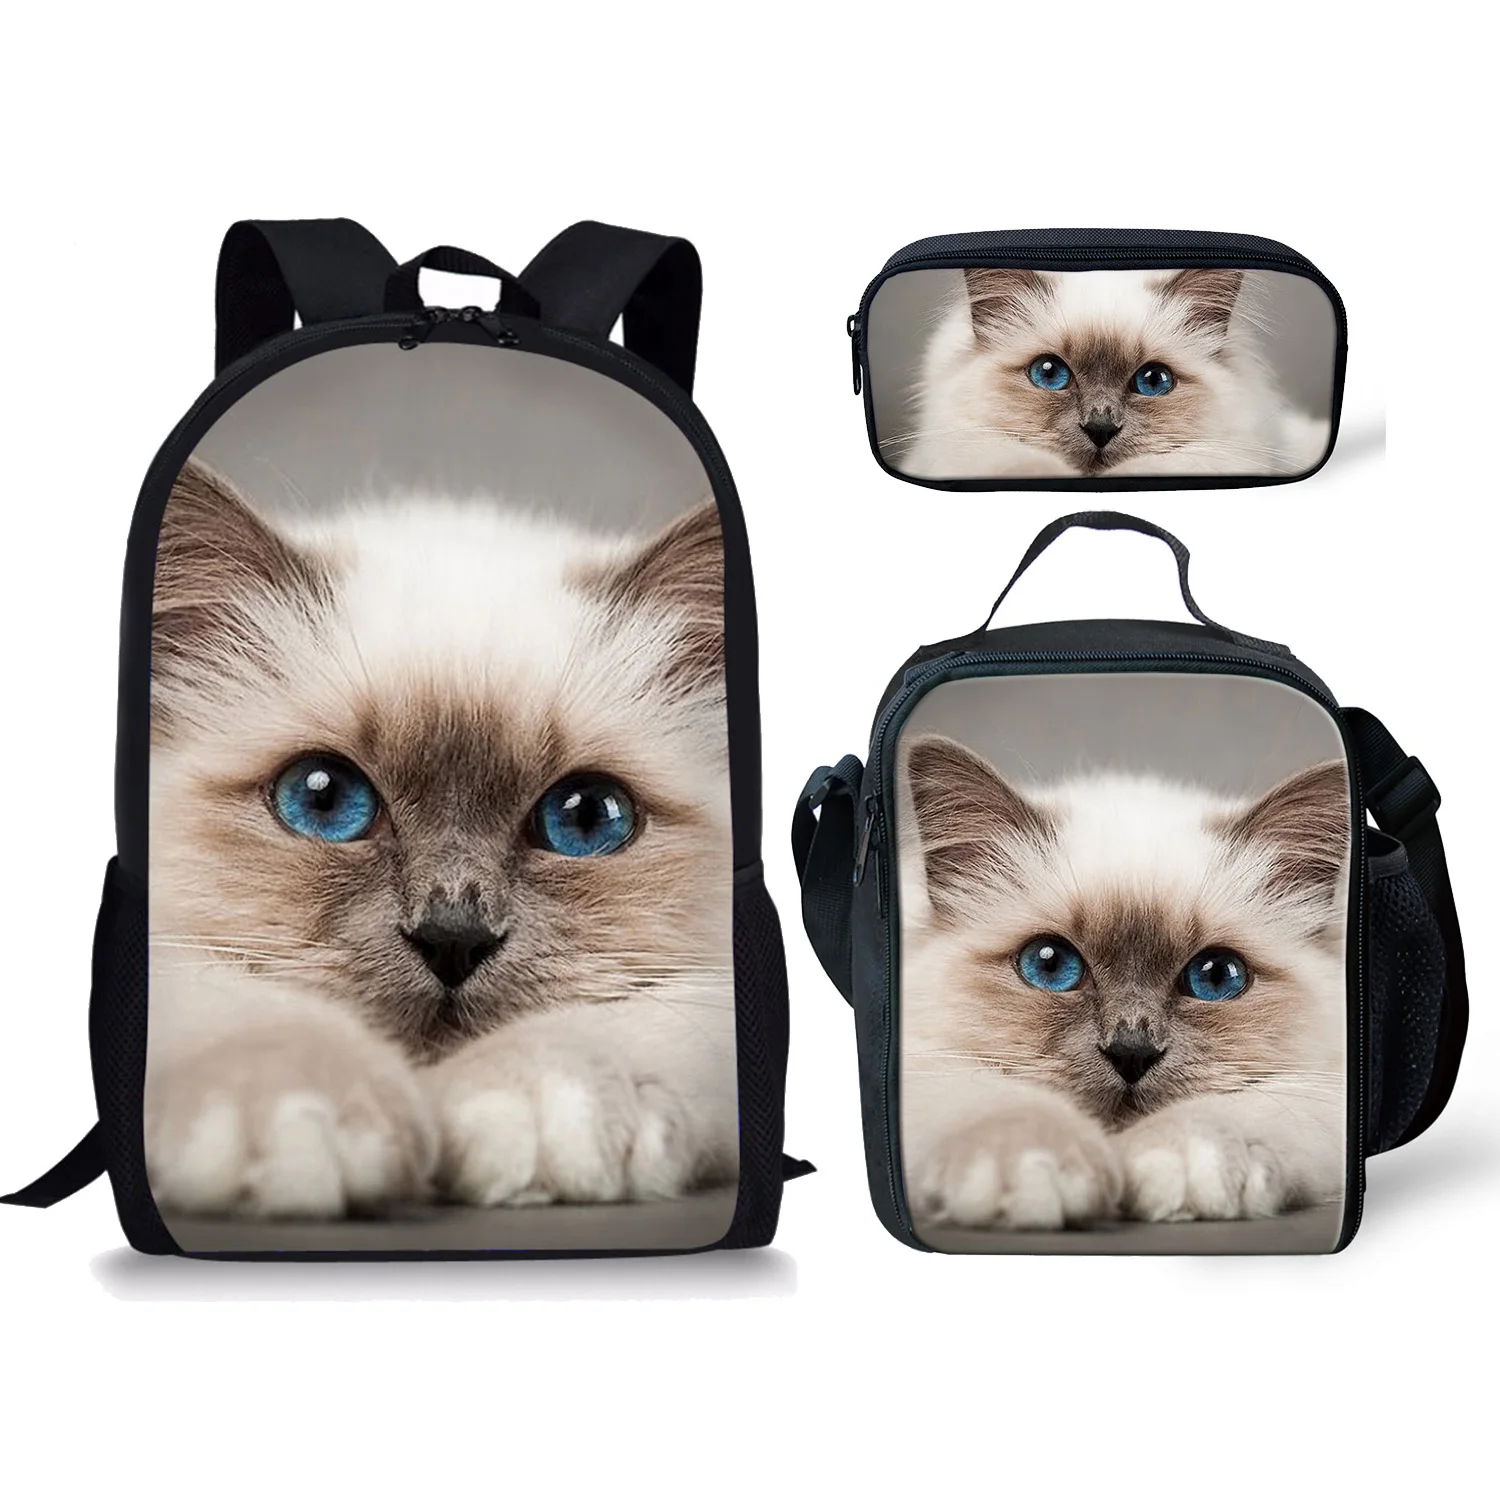 "3 шт., школьный рюкзак для девочек, с рисунком кошки"